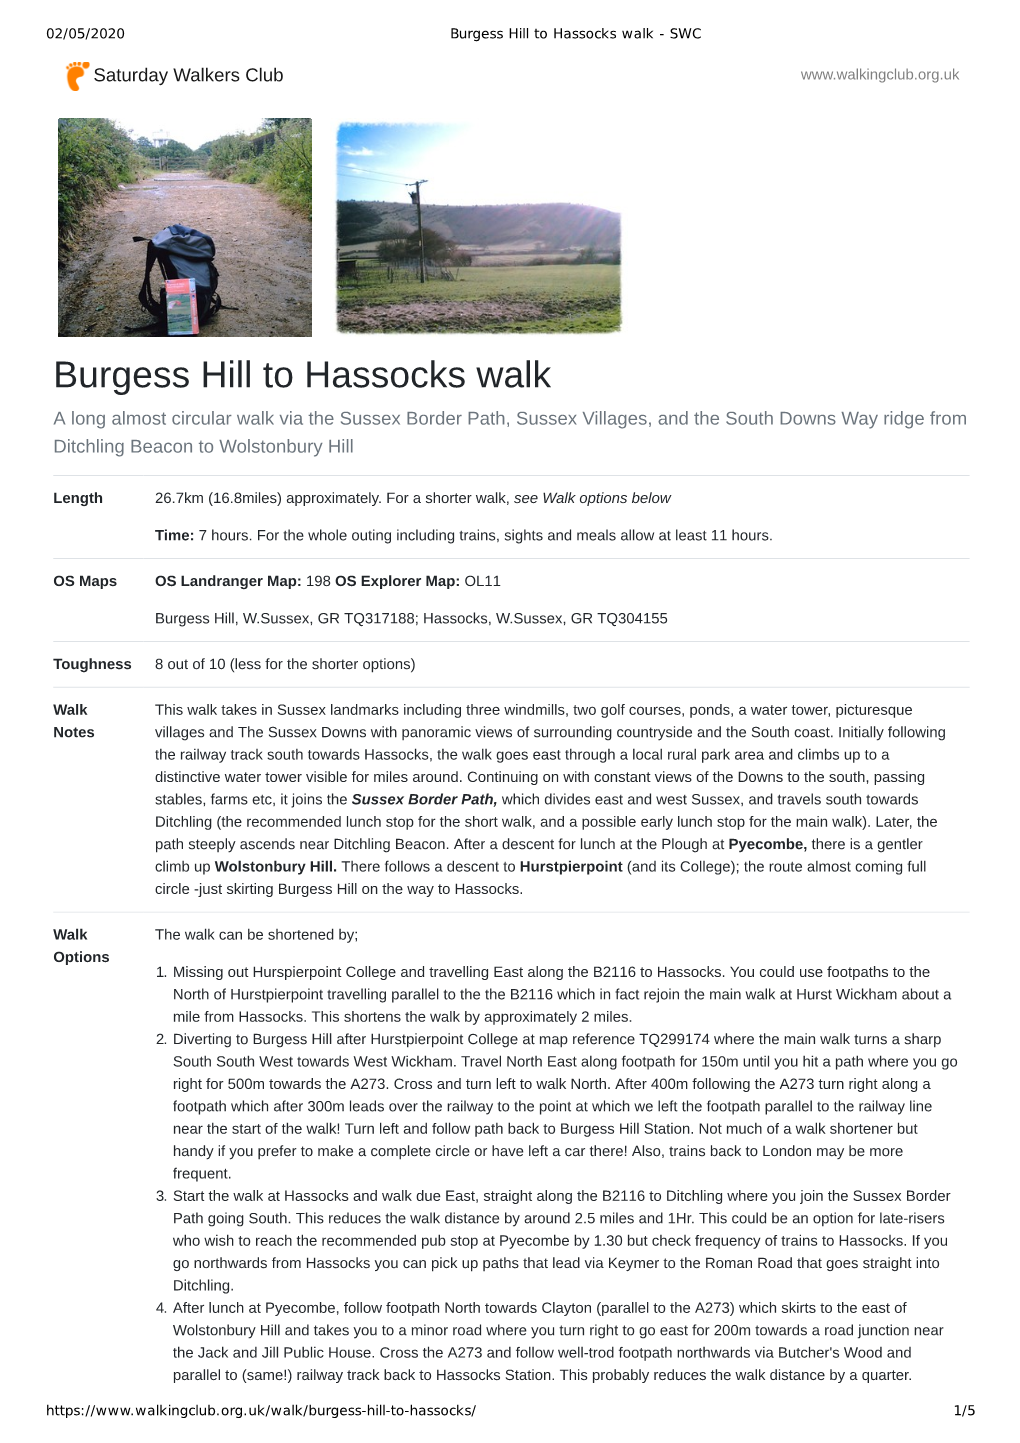 Burgess Hill to Hassocks Walk - SWC